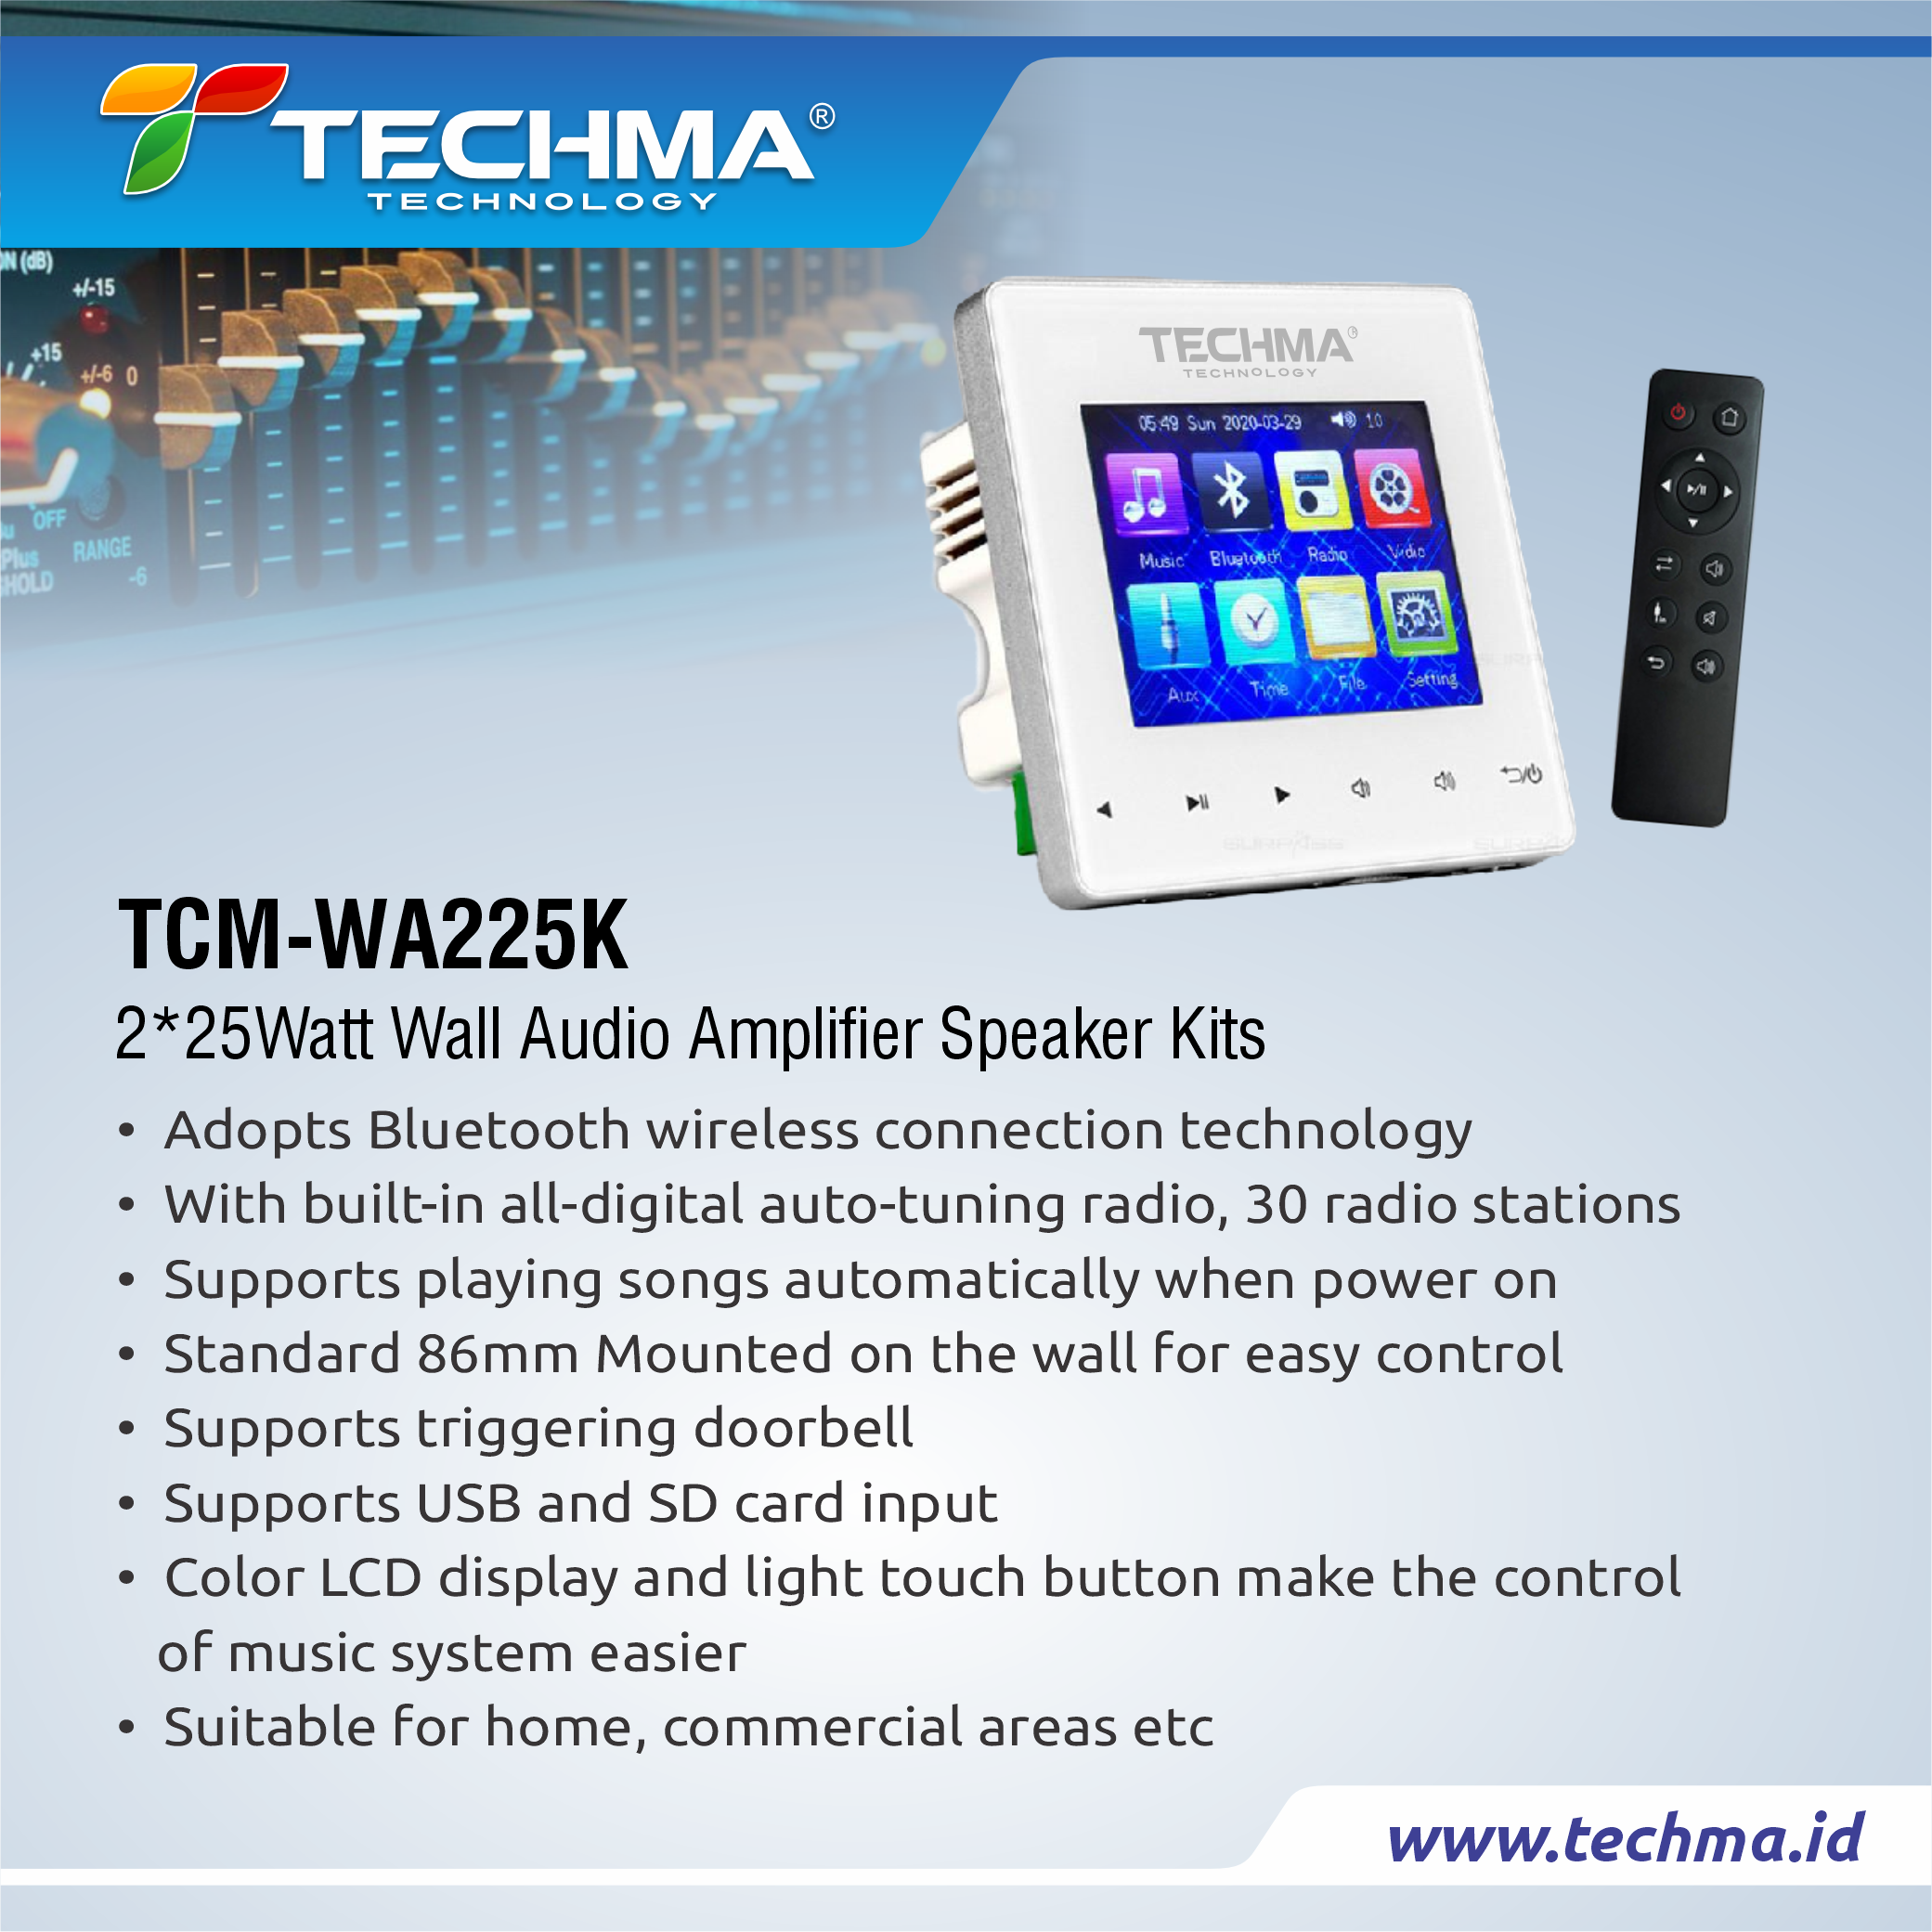 TCM-WA225K web 2